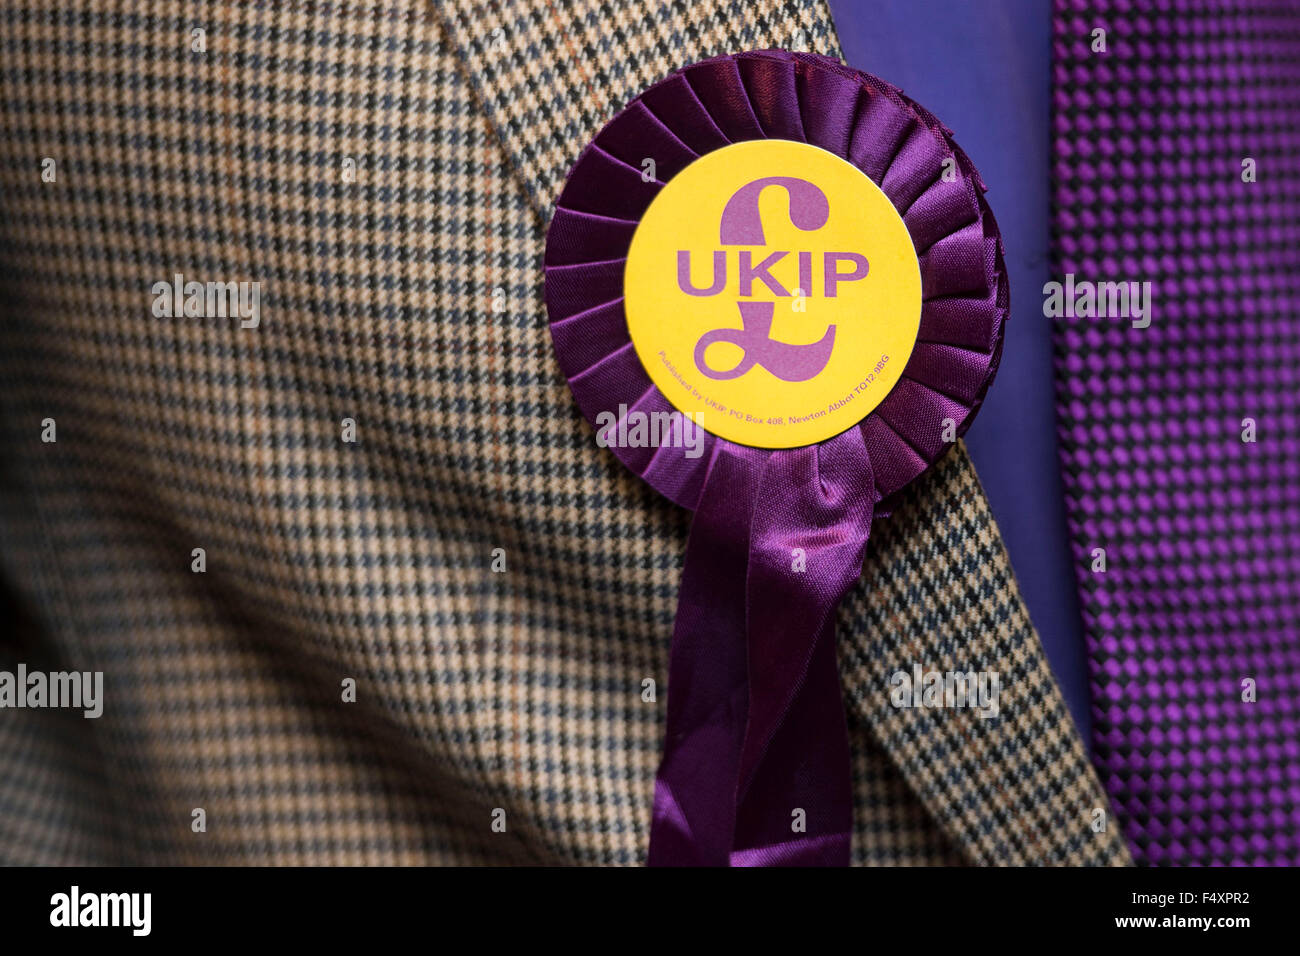 Un parti de l'indépendance du Royaume-Uni (UKIP) rosette sur une veste en tweed. Banque D'Images